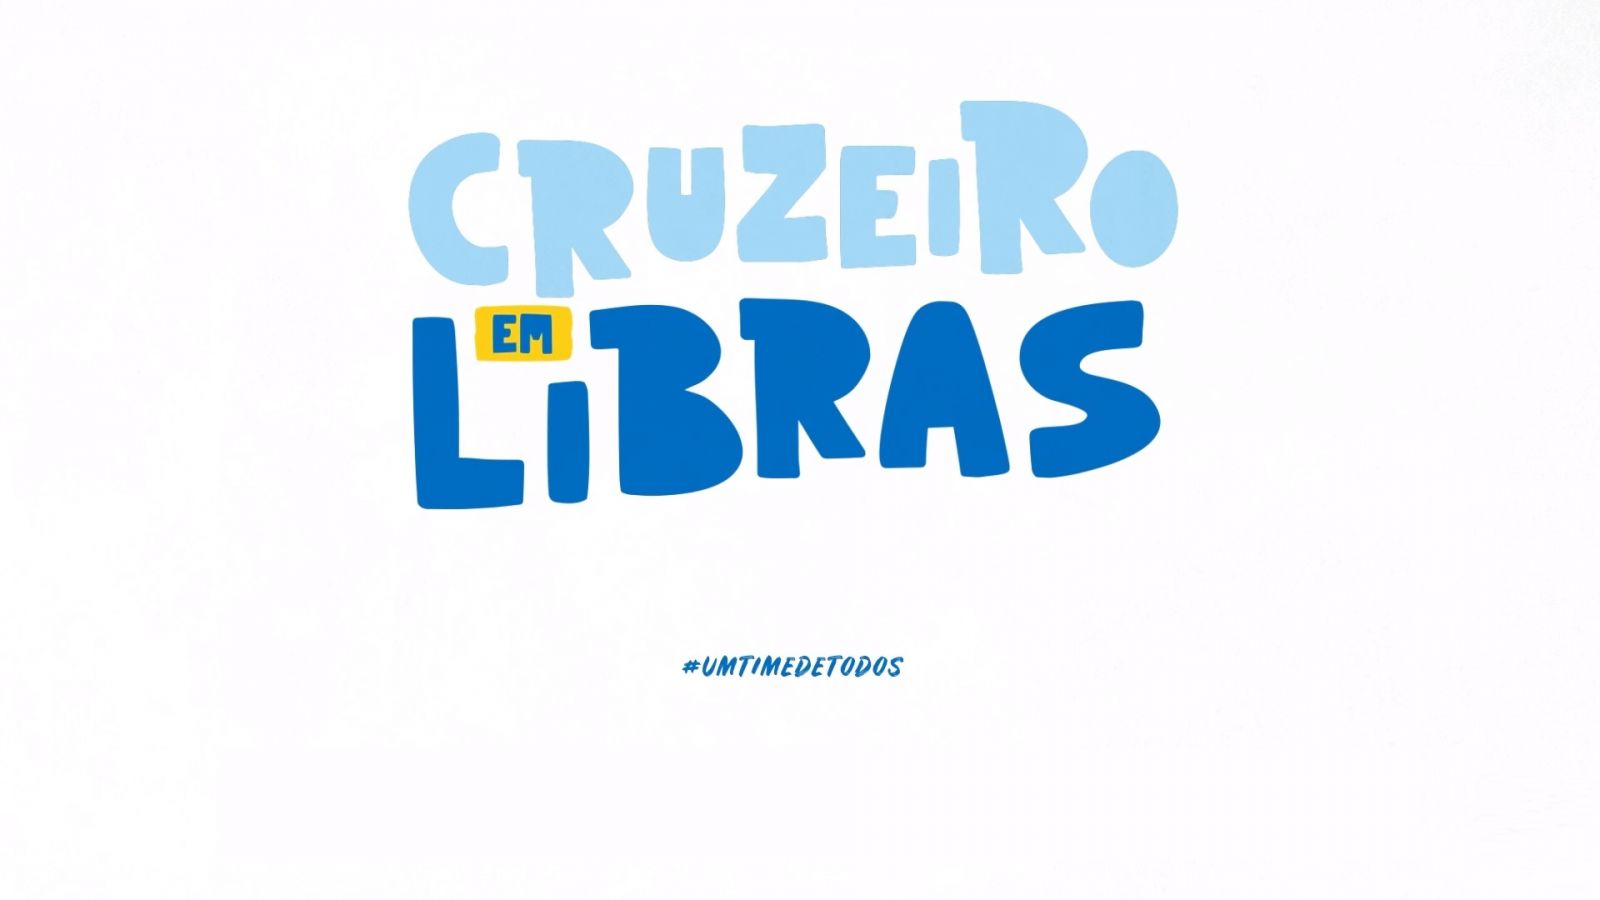 Resultado do Comitê da Diversidade e Inclusão, Cruzeiro anuncia primeiro boletim de notícias em libras